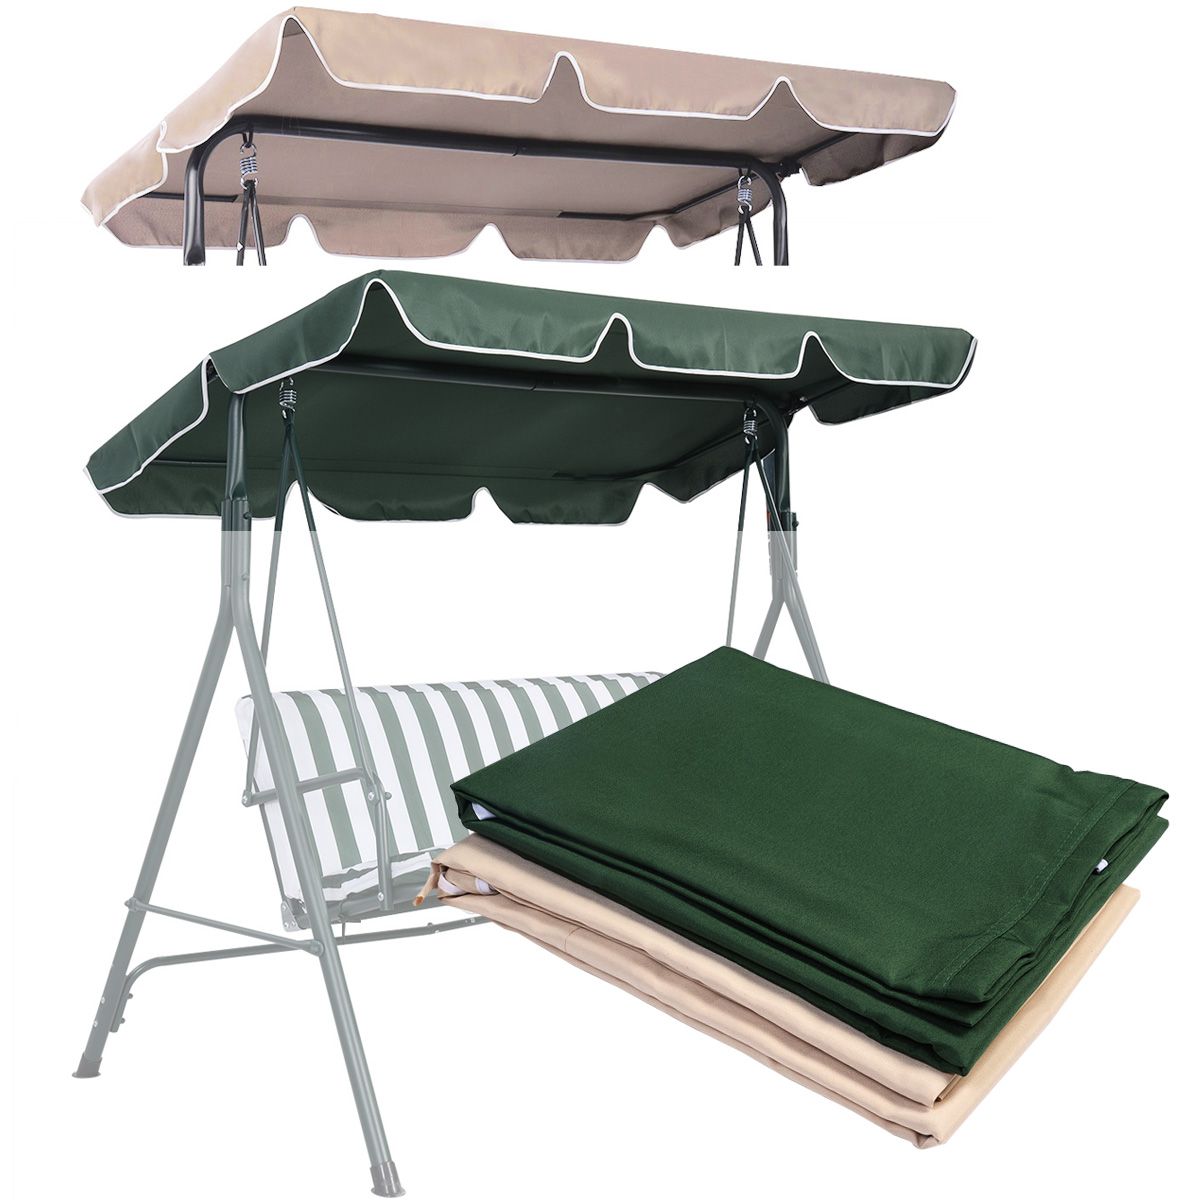 Sun canopy vervangende luifel dakbedekking voor schommelstoel beige/groen 196 x 110 cm